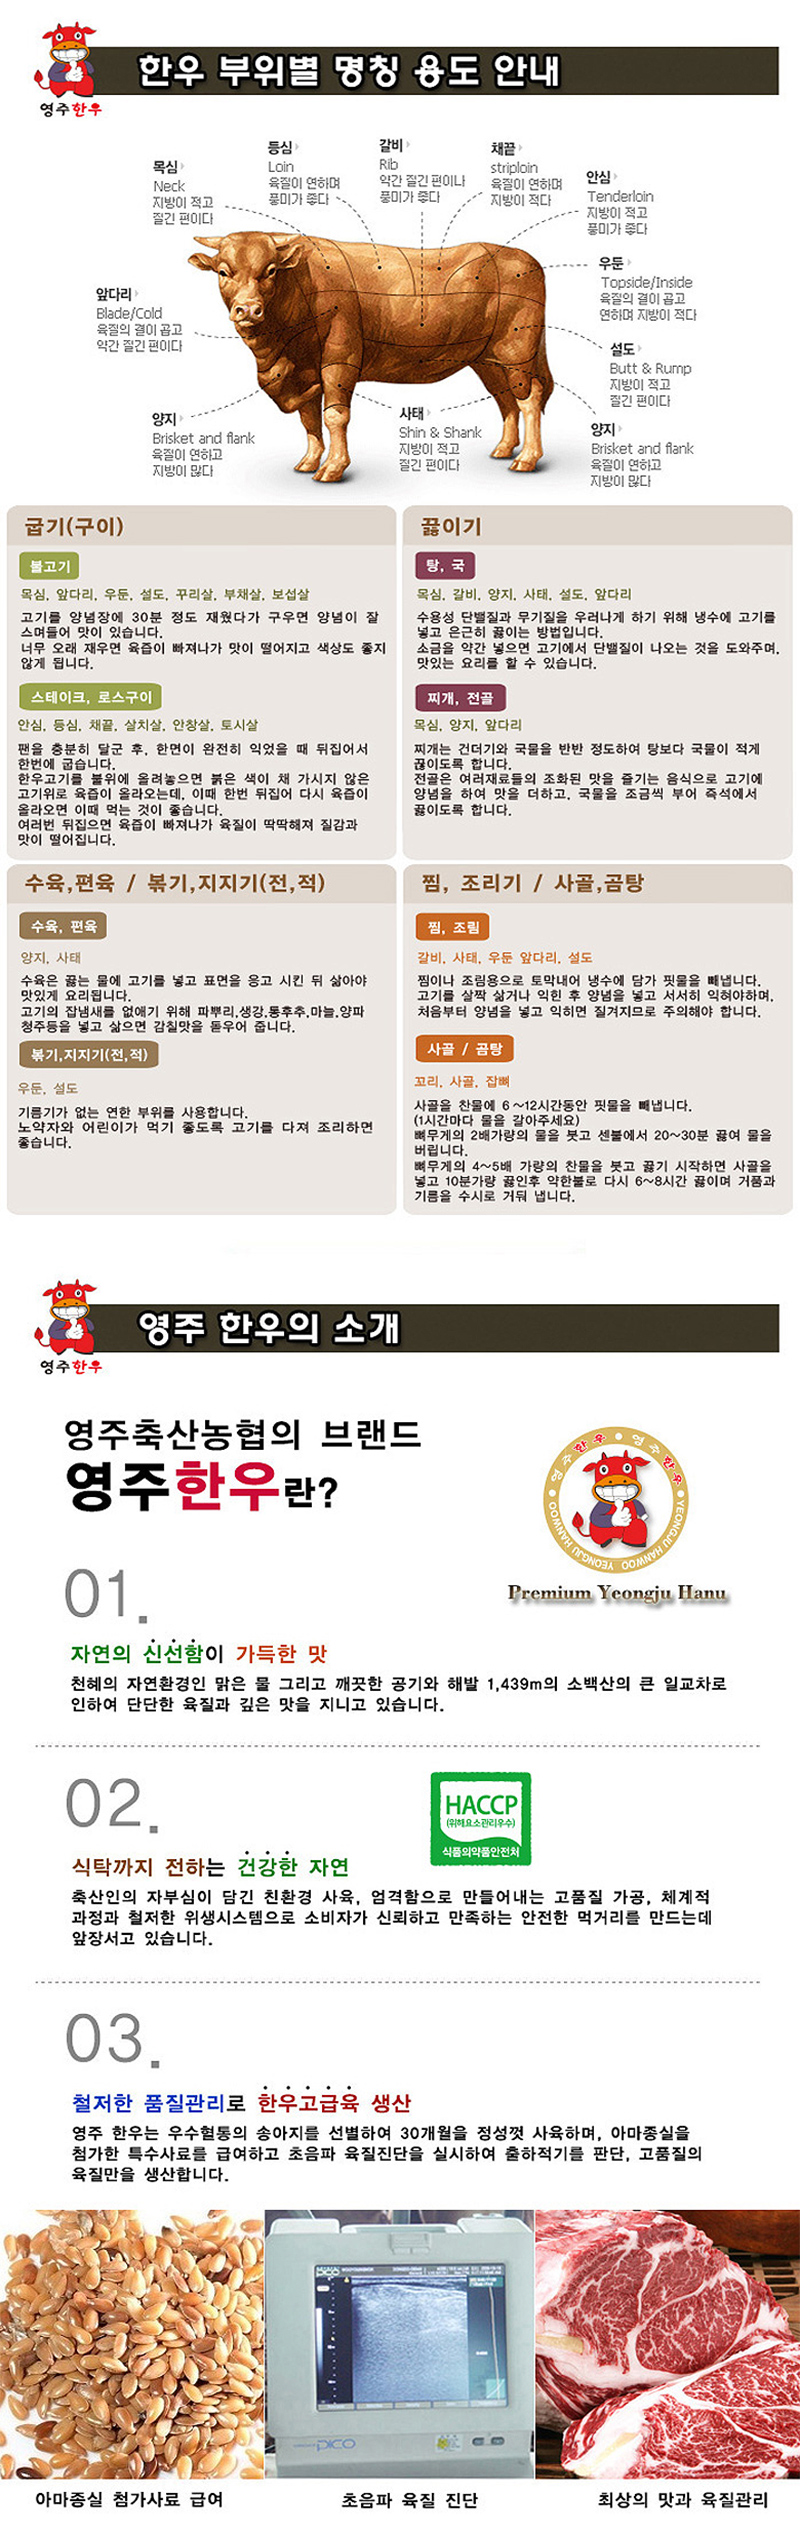 yeongjuchughyeob-yeongju_hanu_teugseon_6ho_detail_800_6.jpg